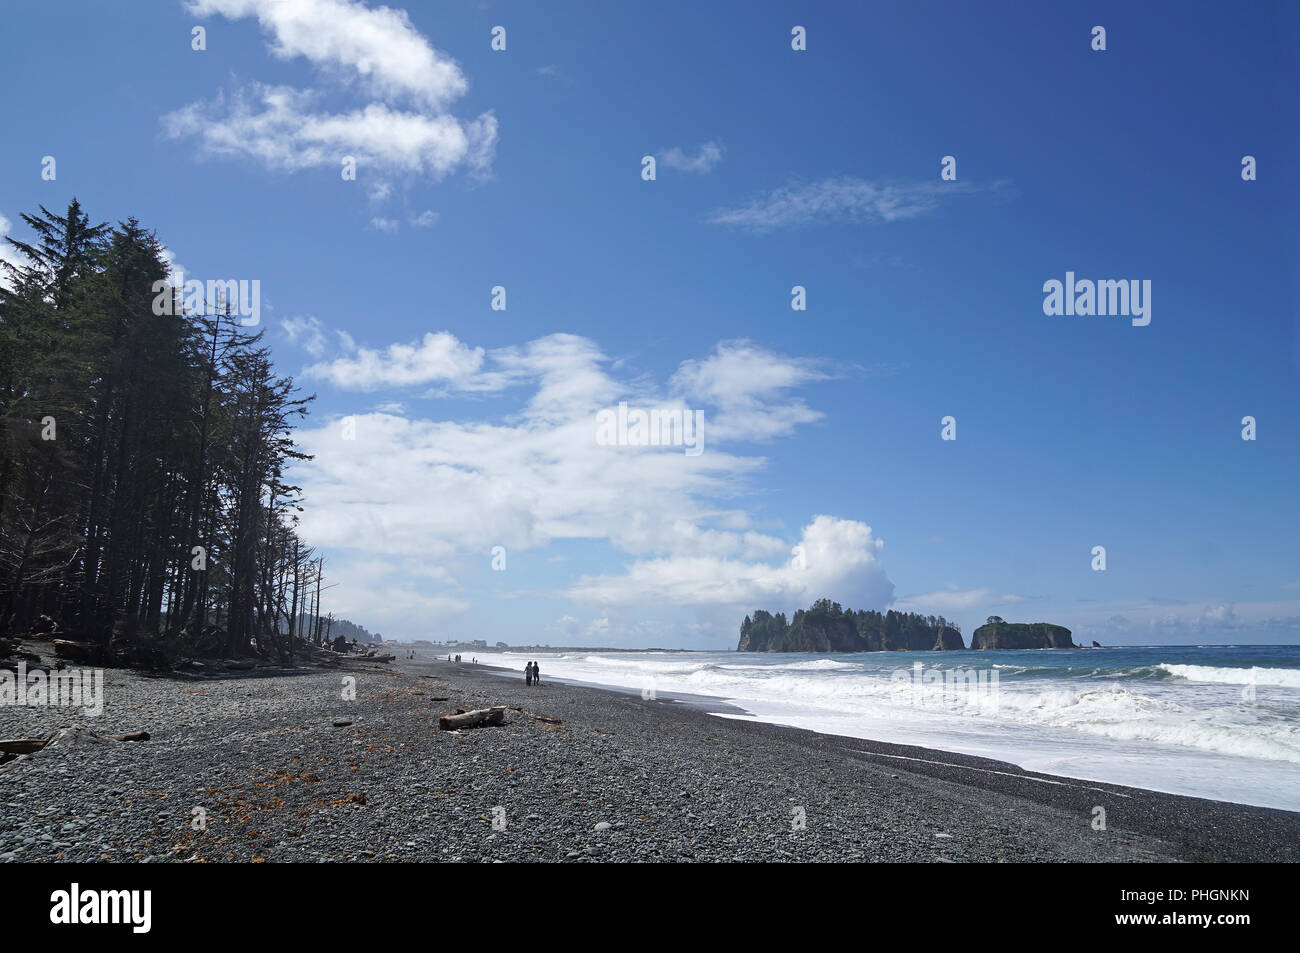 Rialto Beach, Olympic National Park, Washington, USA Stock Photo